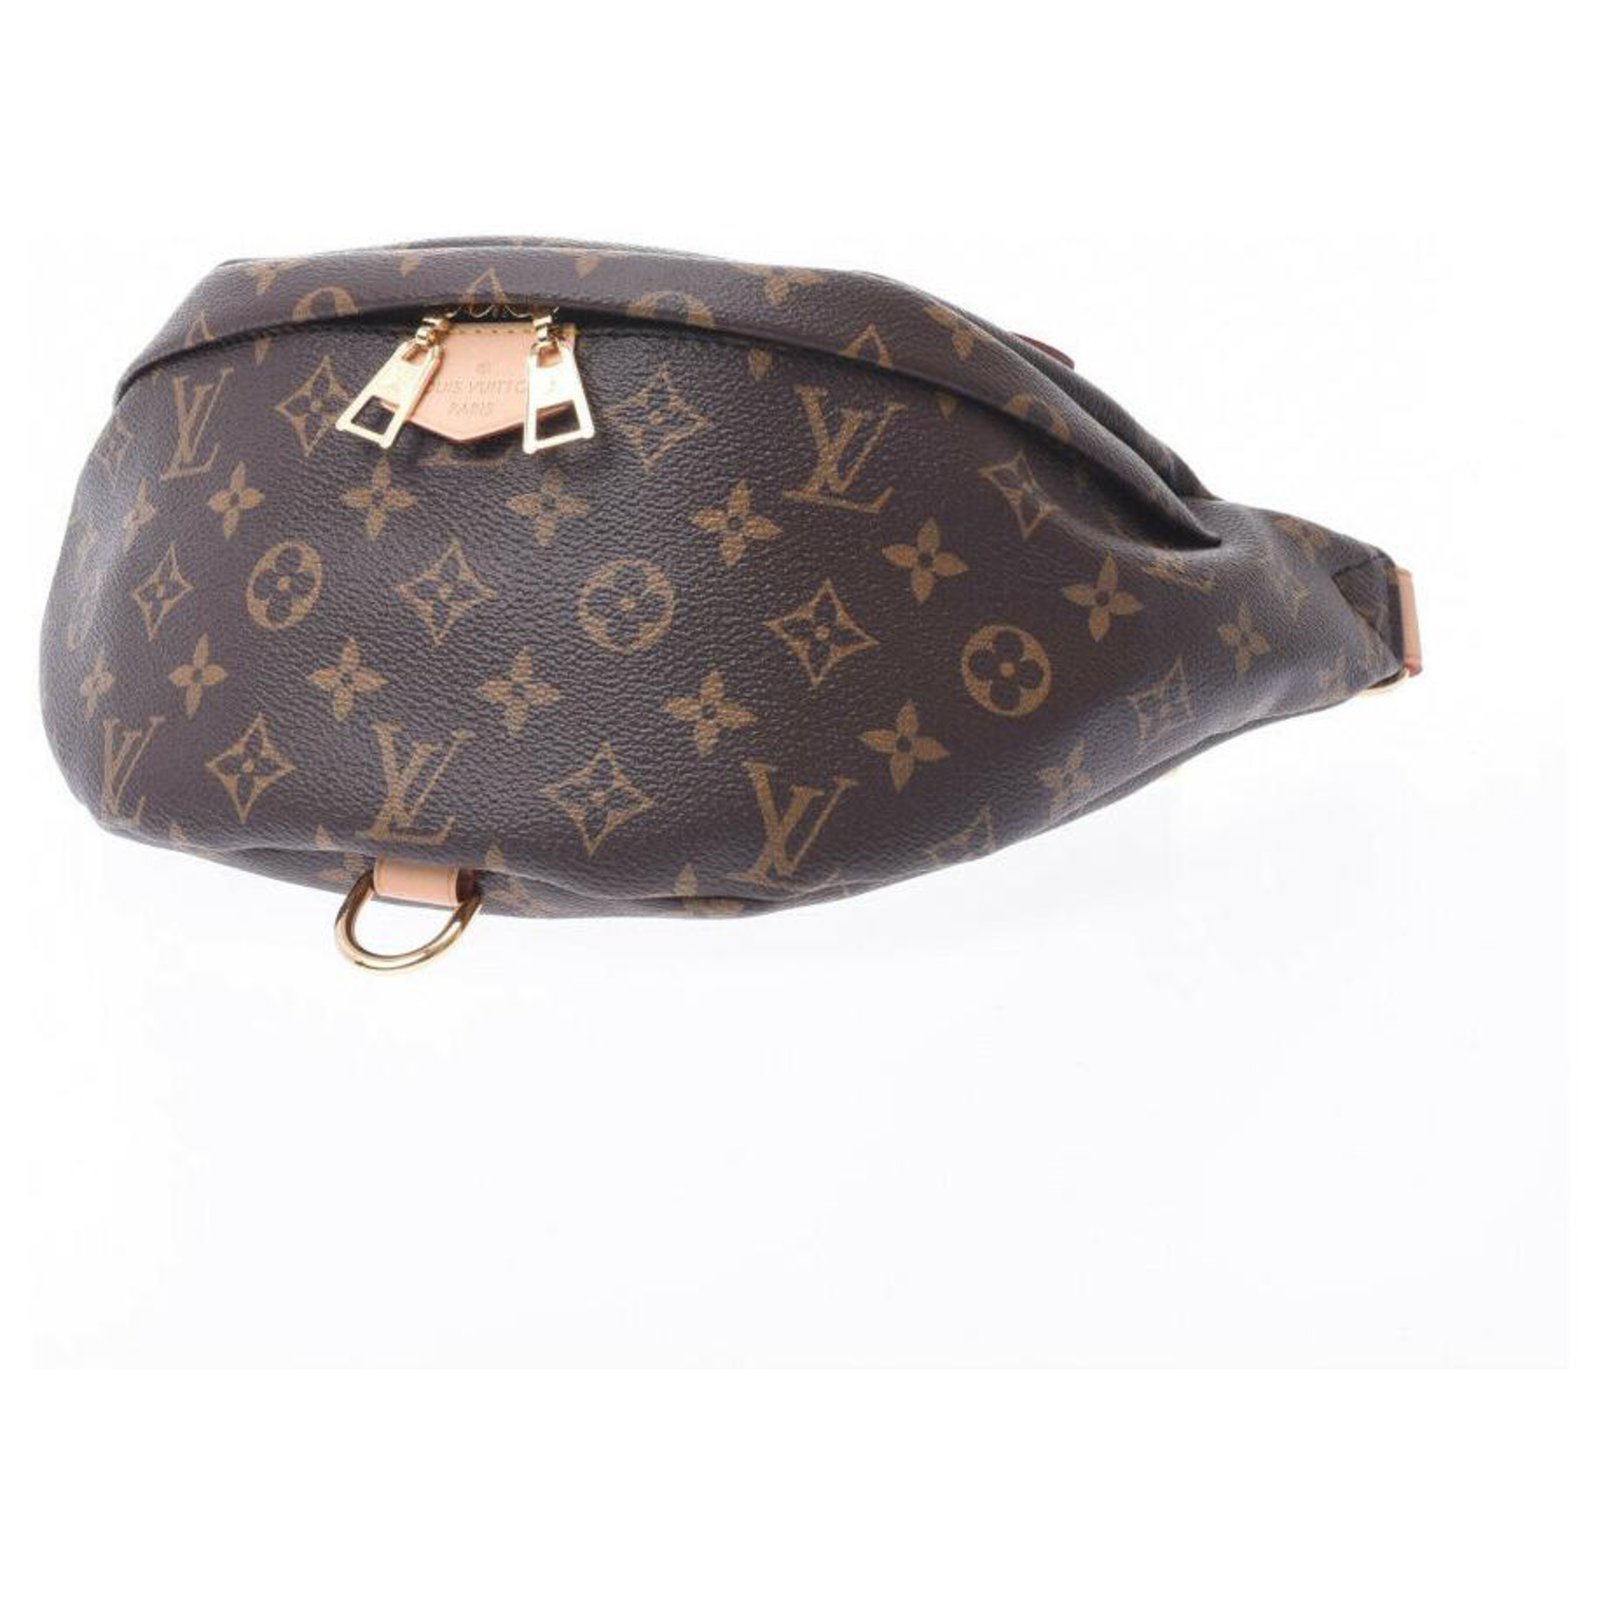 Bum bag / sac ceinture cloth crossbody bag Louis Vuitton Brown in Cloth -  24670167